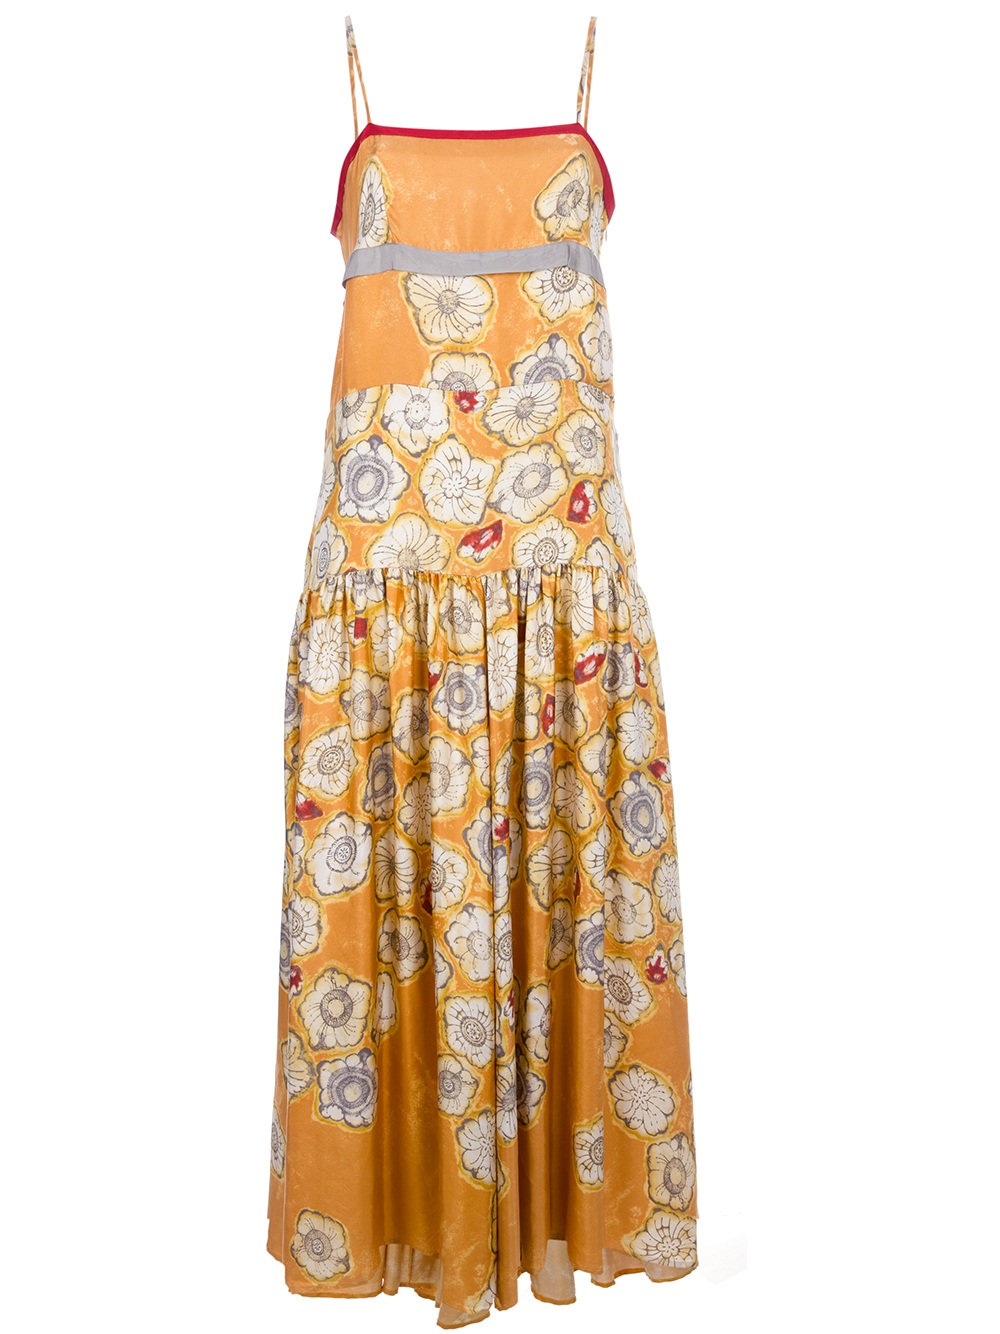 Lyst - Dries Van Noten Floral Print Spaghetti Strap Dress